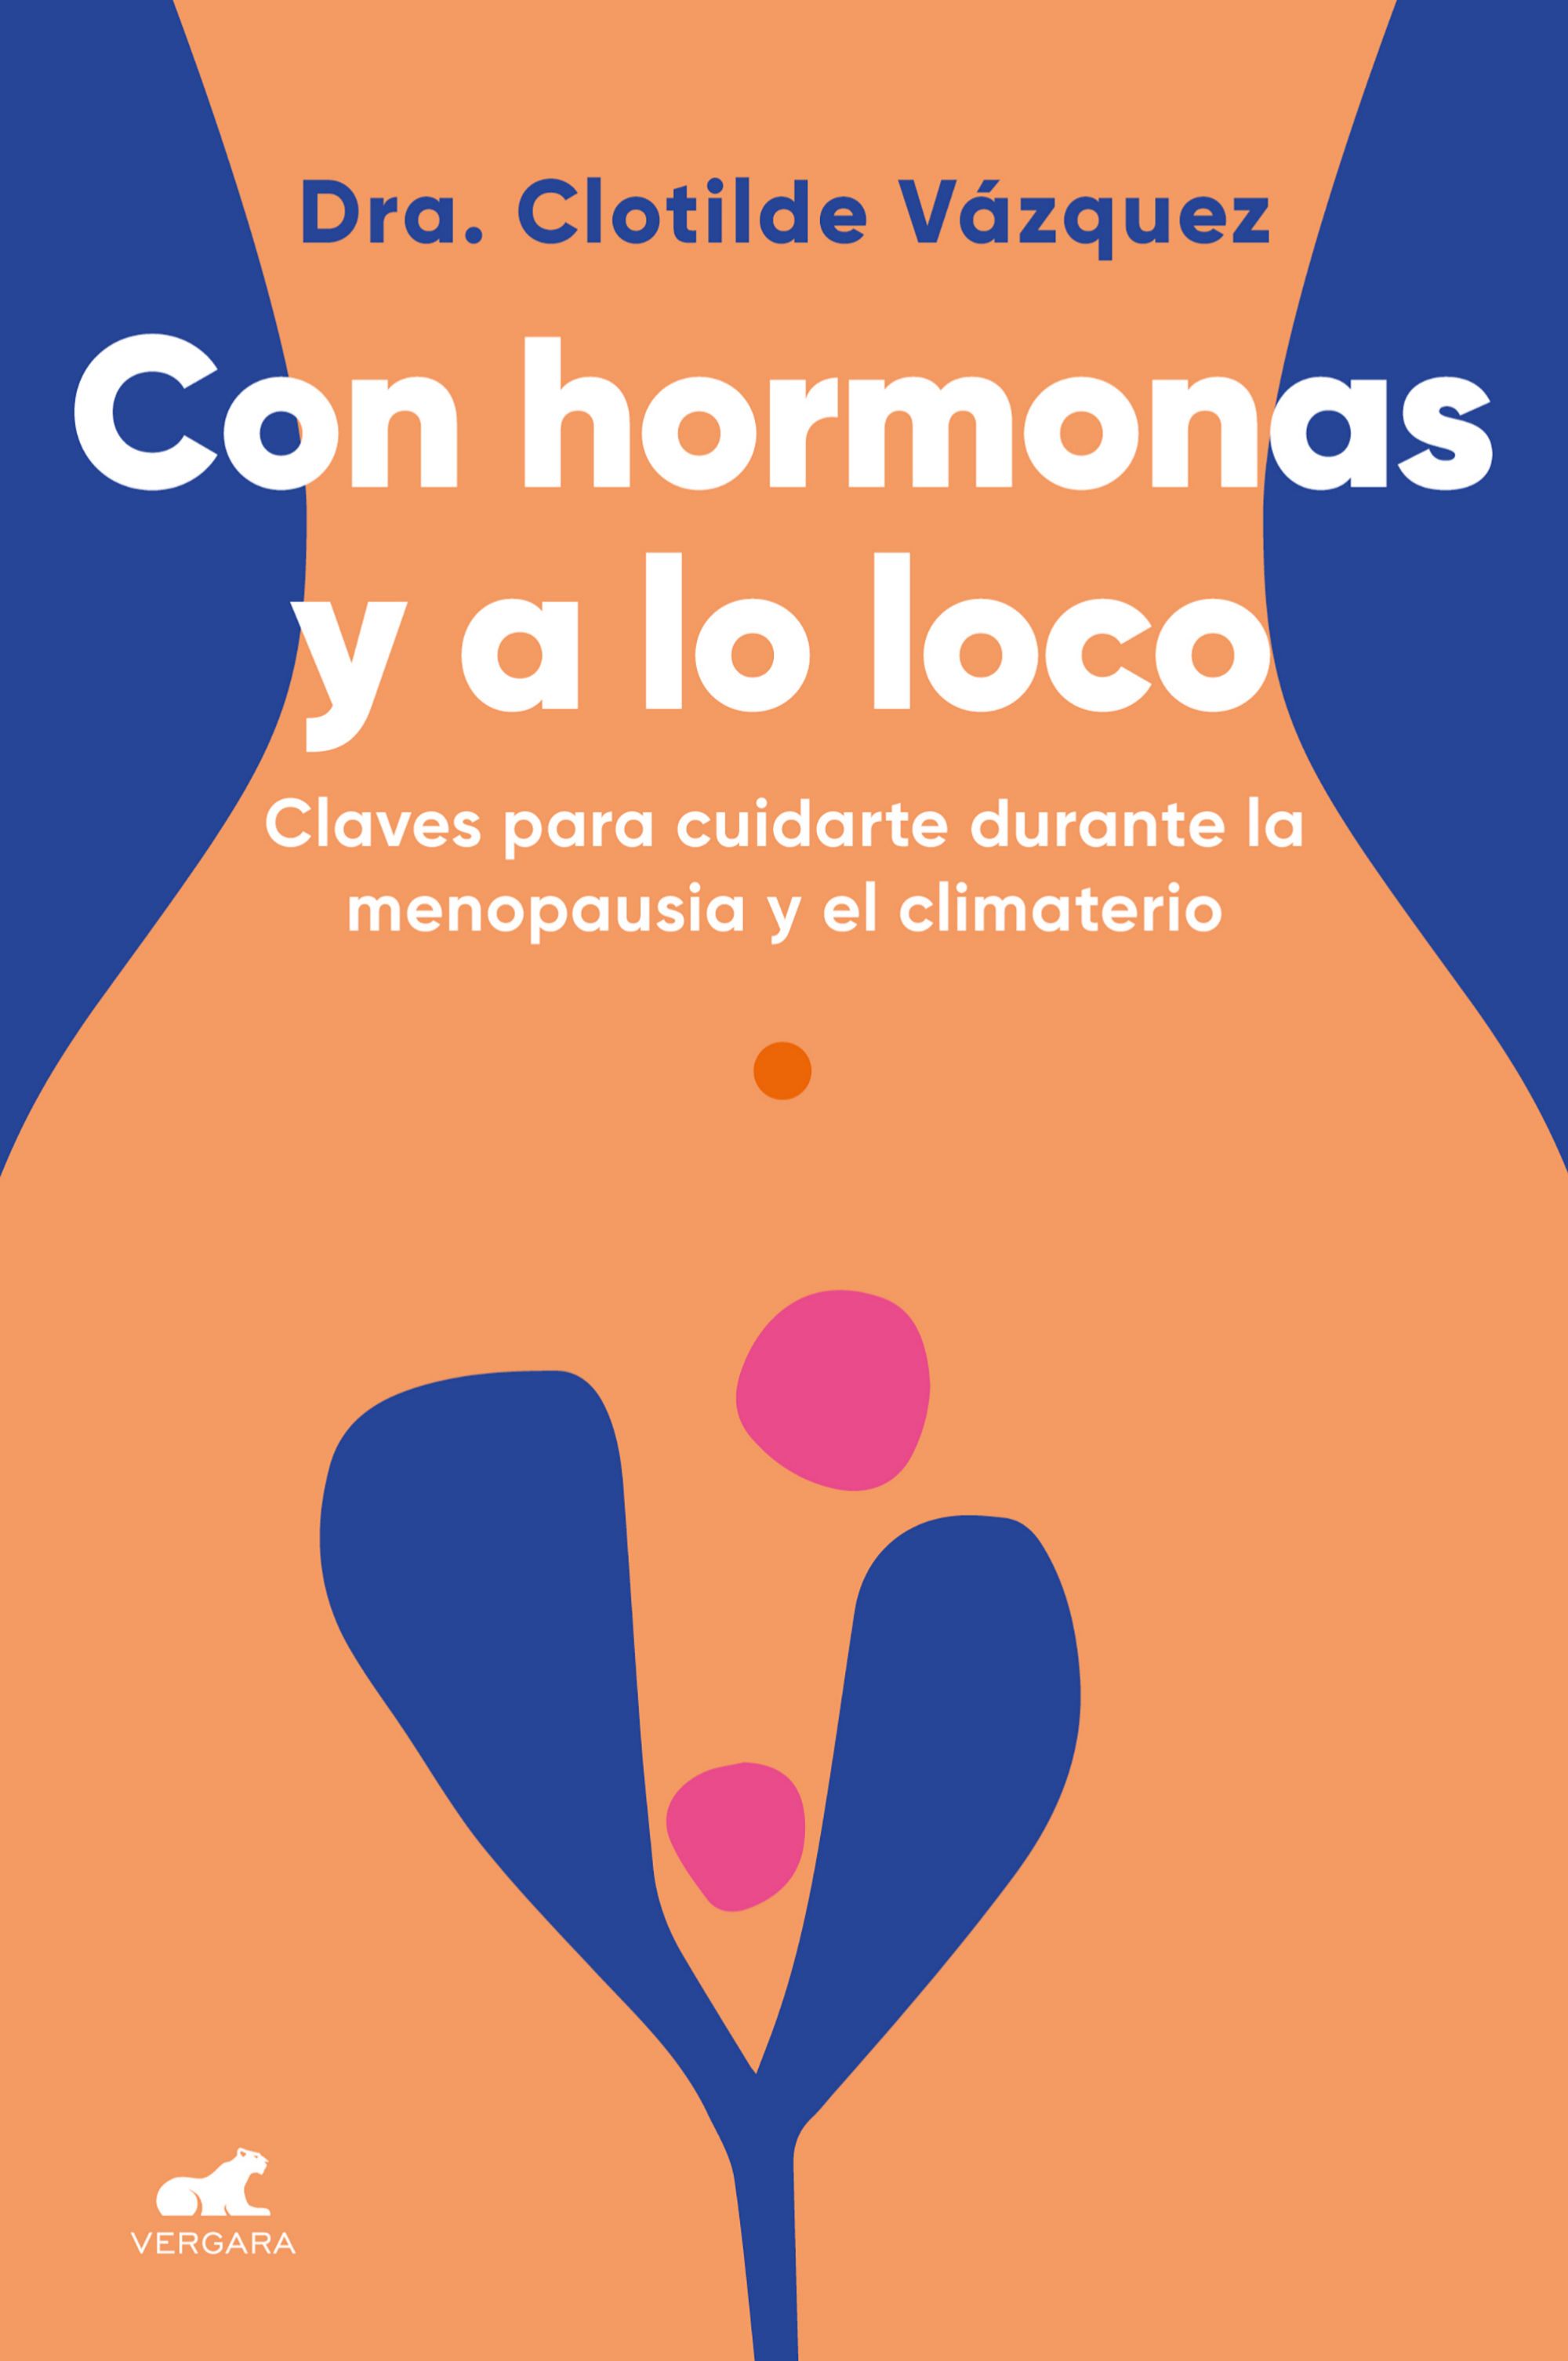 Con hormonas y a lo loco, de la doctora Clotilde Vázquez, una completa guía para afrontar la menopausia.